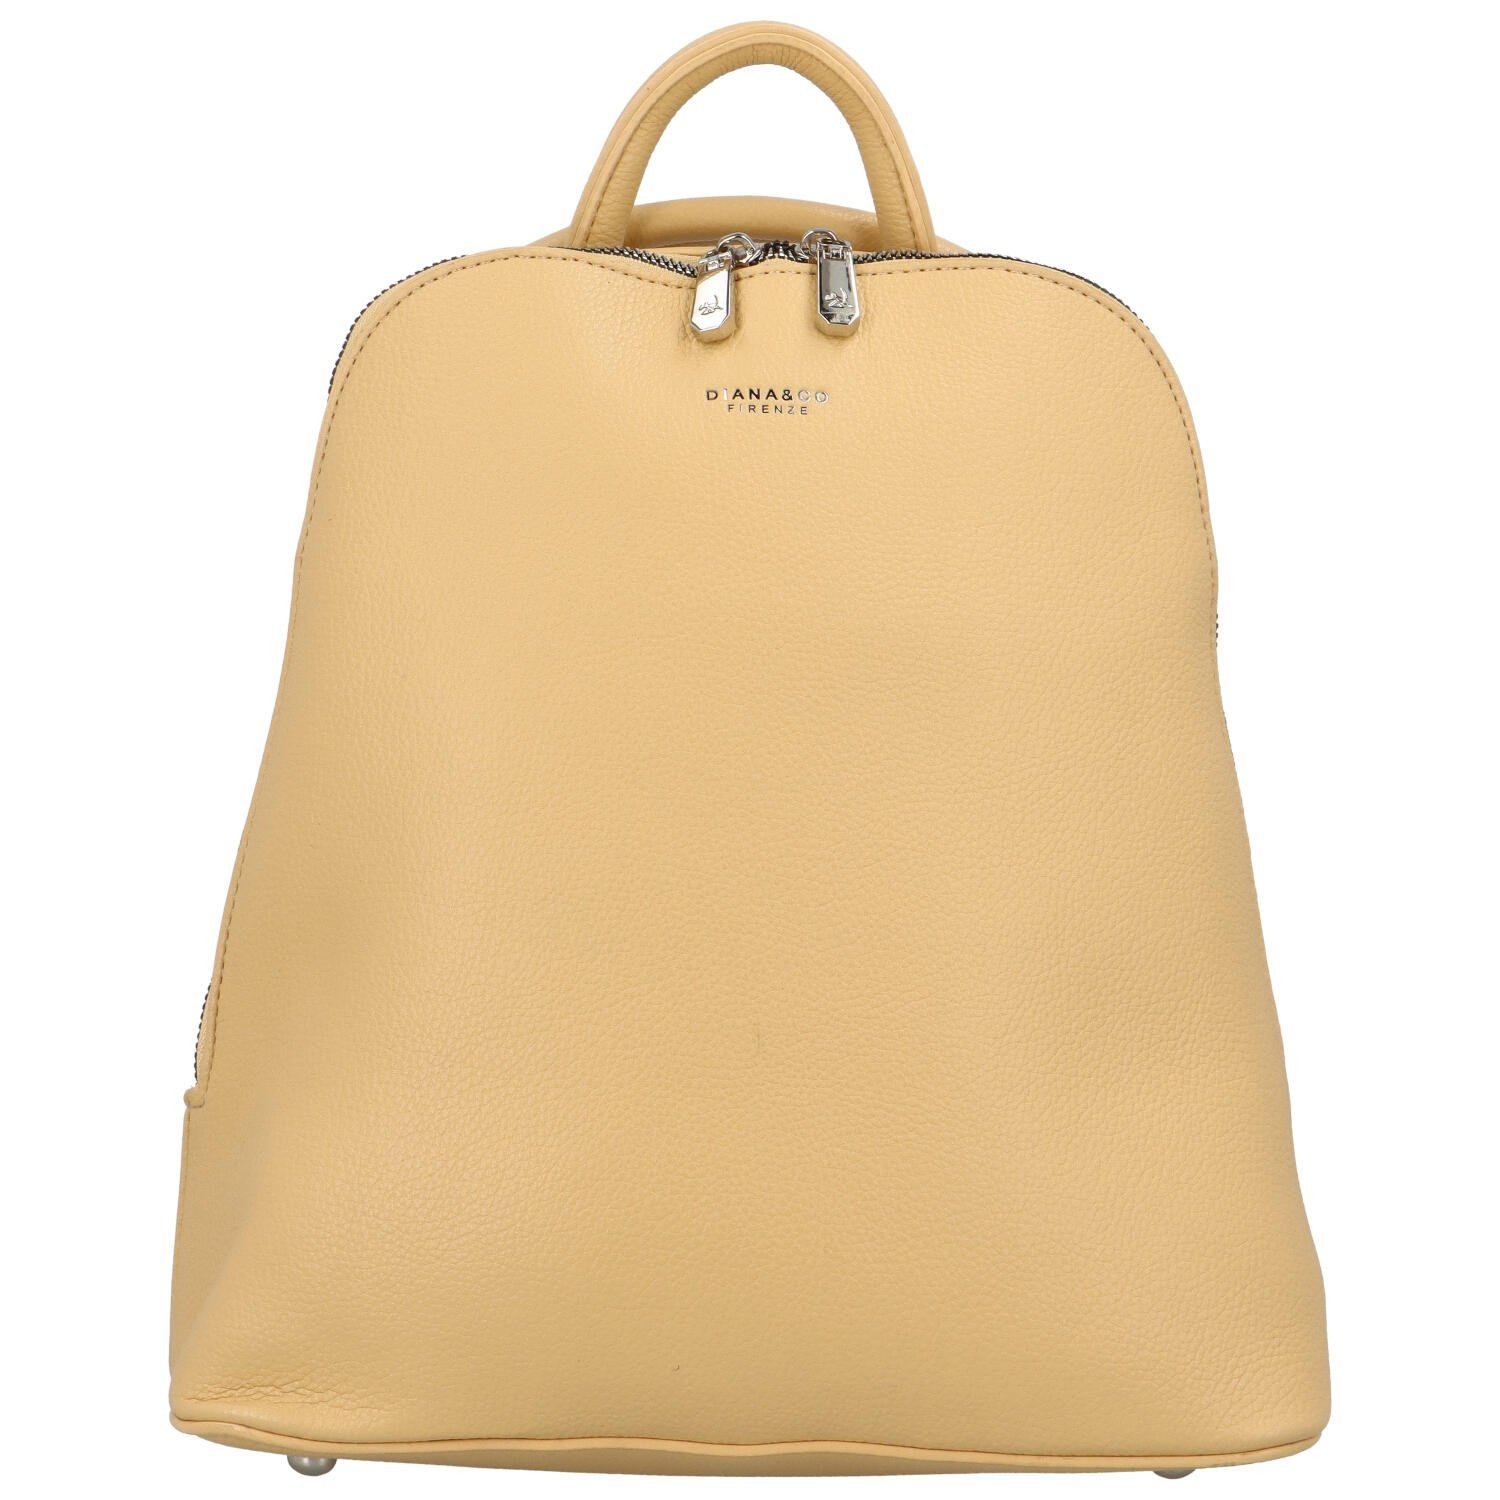 Dámský městský batoh kabelka žlutý - DIANA & CO Flitan žlutá